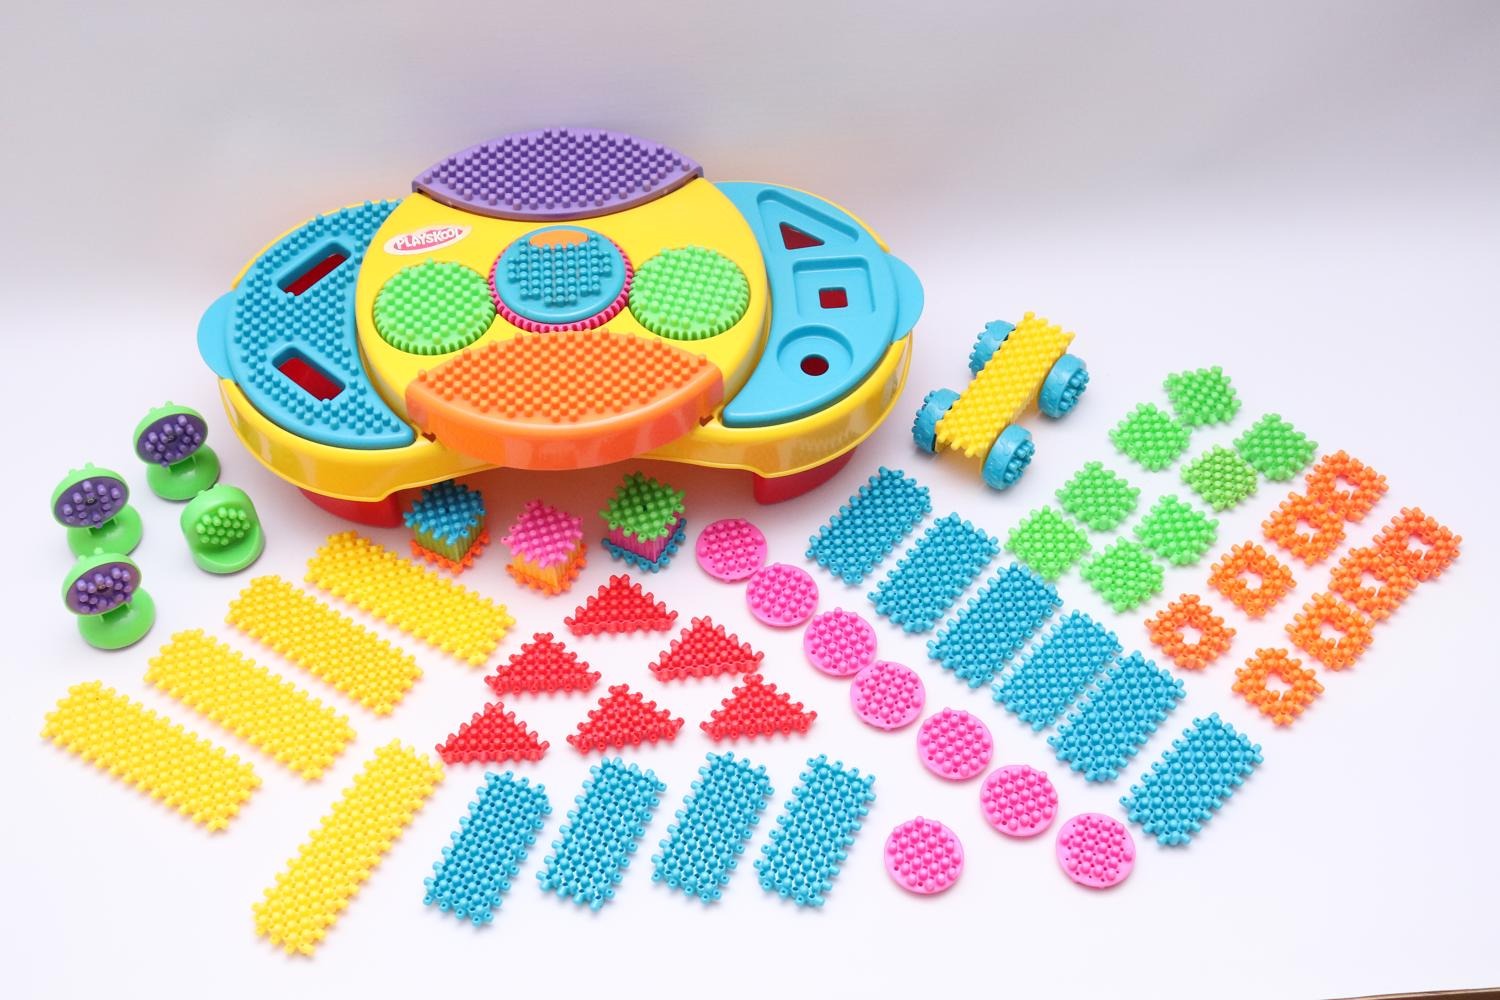 Automatisering stel je voor Kerel playskool speeltafel met blokken - Grove motoriek / Blokken -  edukleuter-outlet